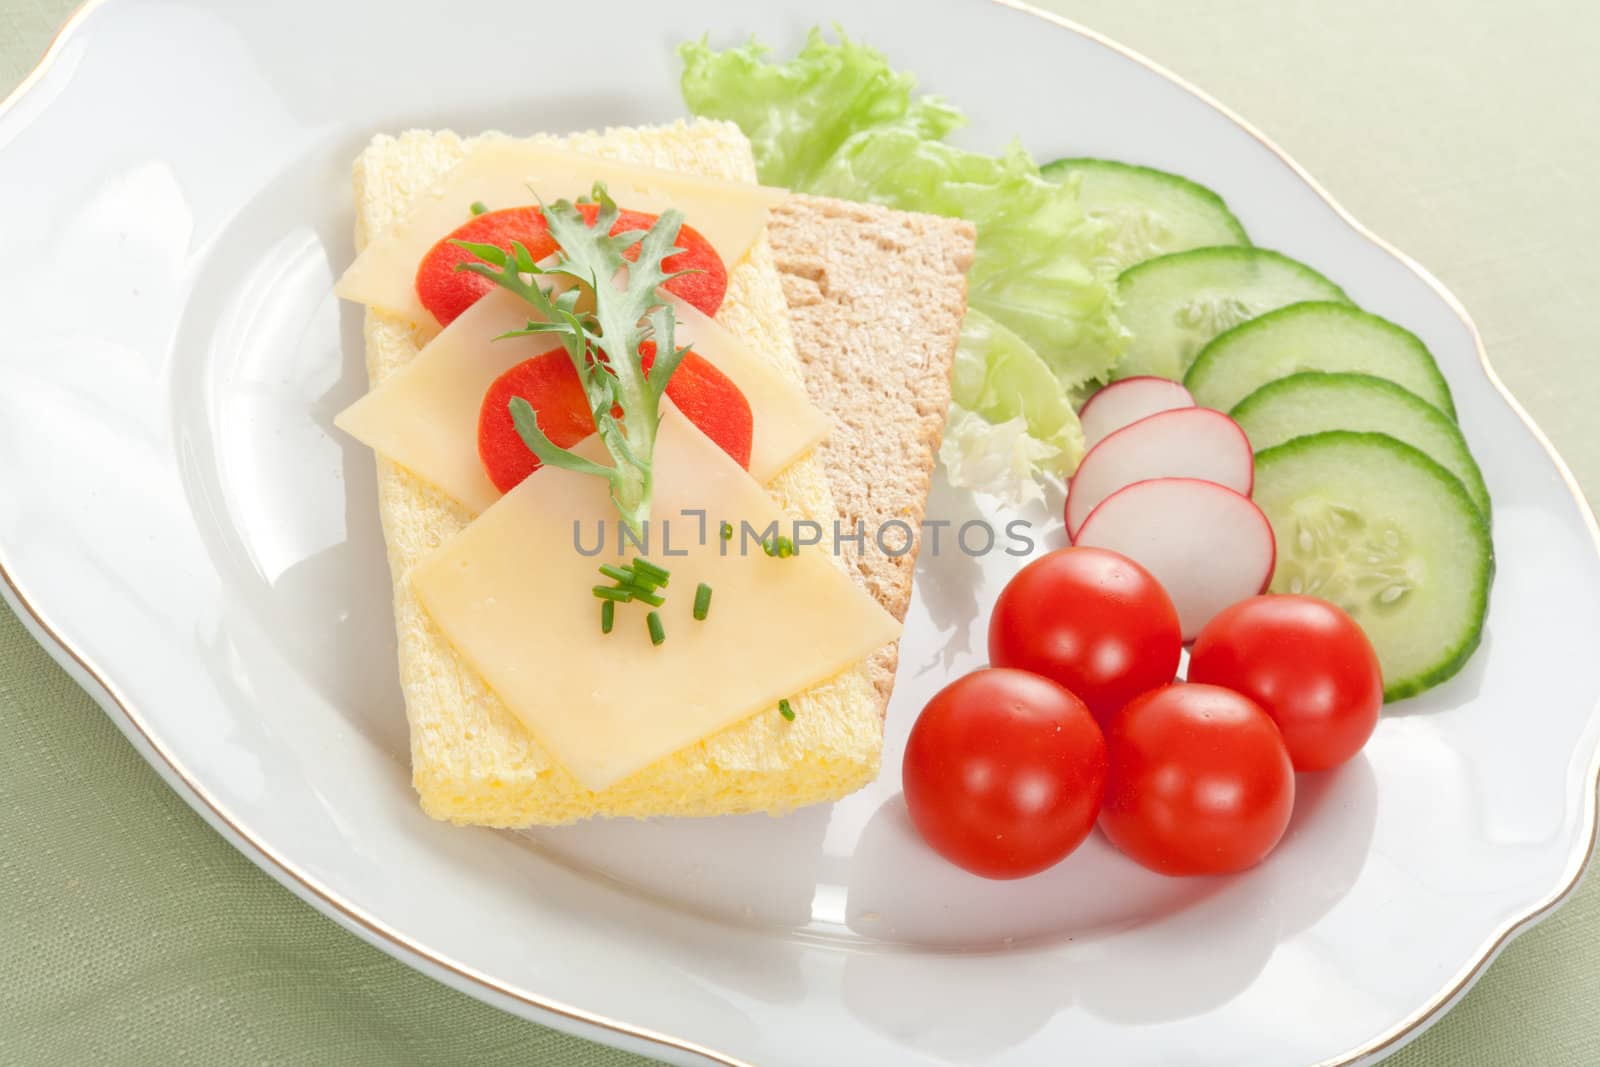 dietetic sandwich tasty breakfast on the plate 